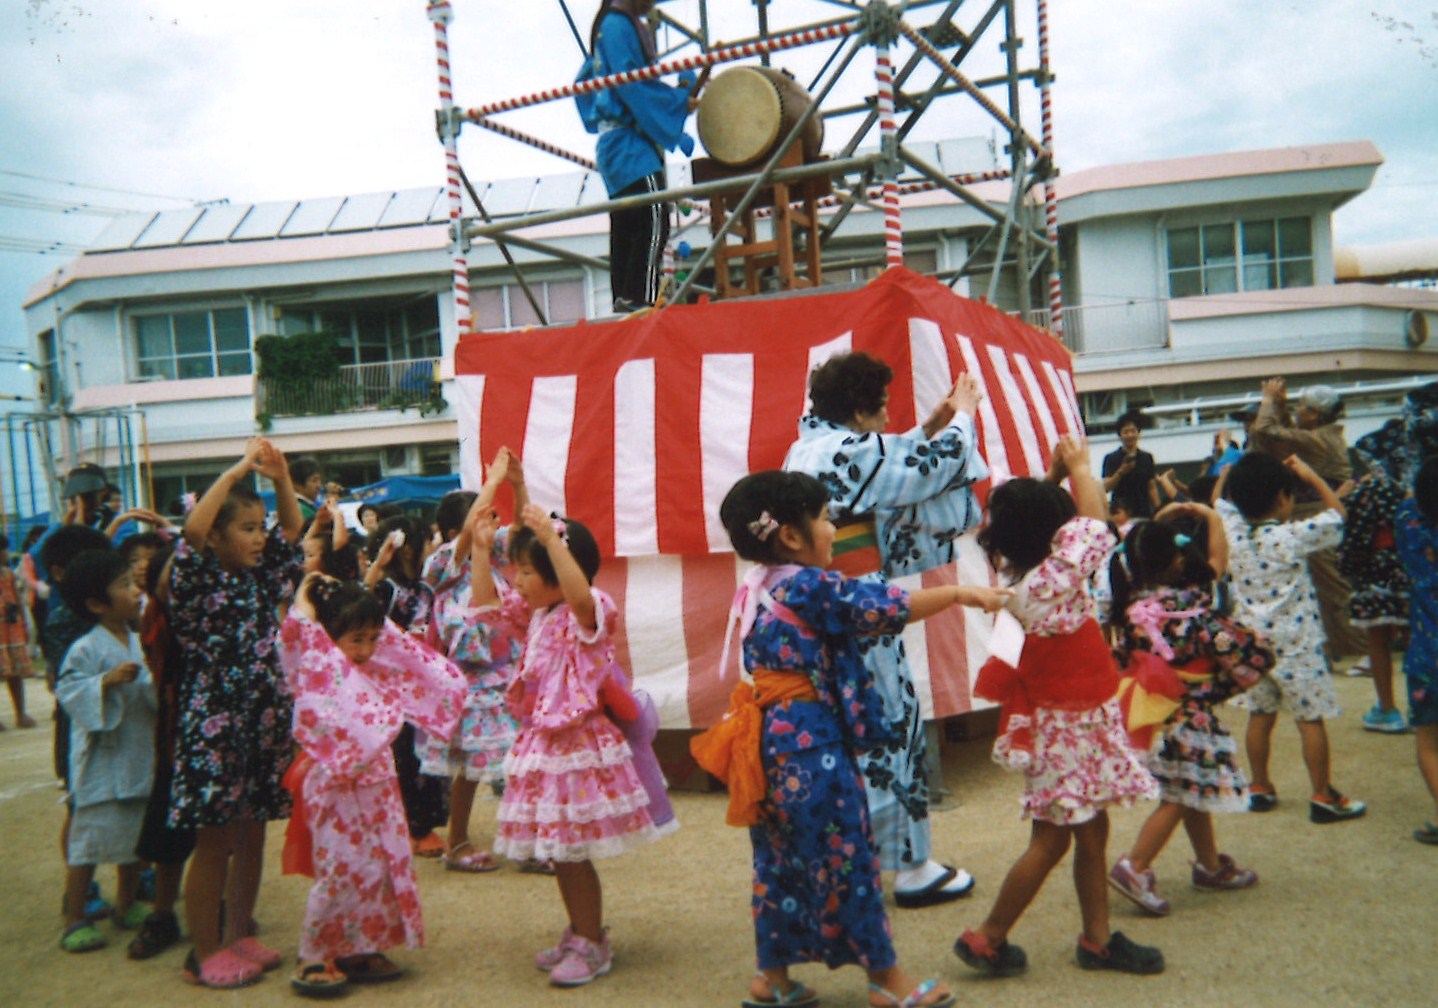 平成２６年度シニアクラブ浜松市飯田地区連合会での取組み